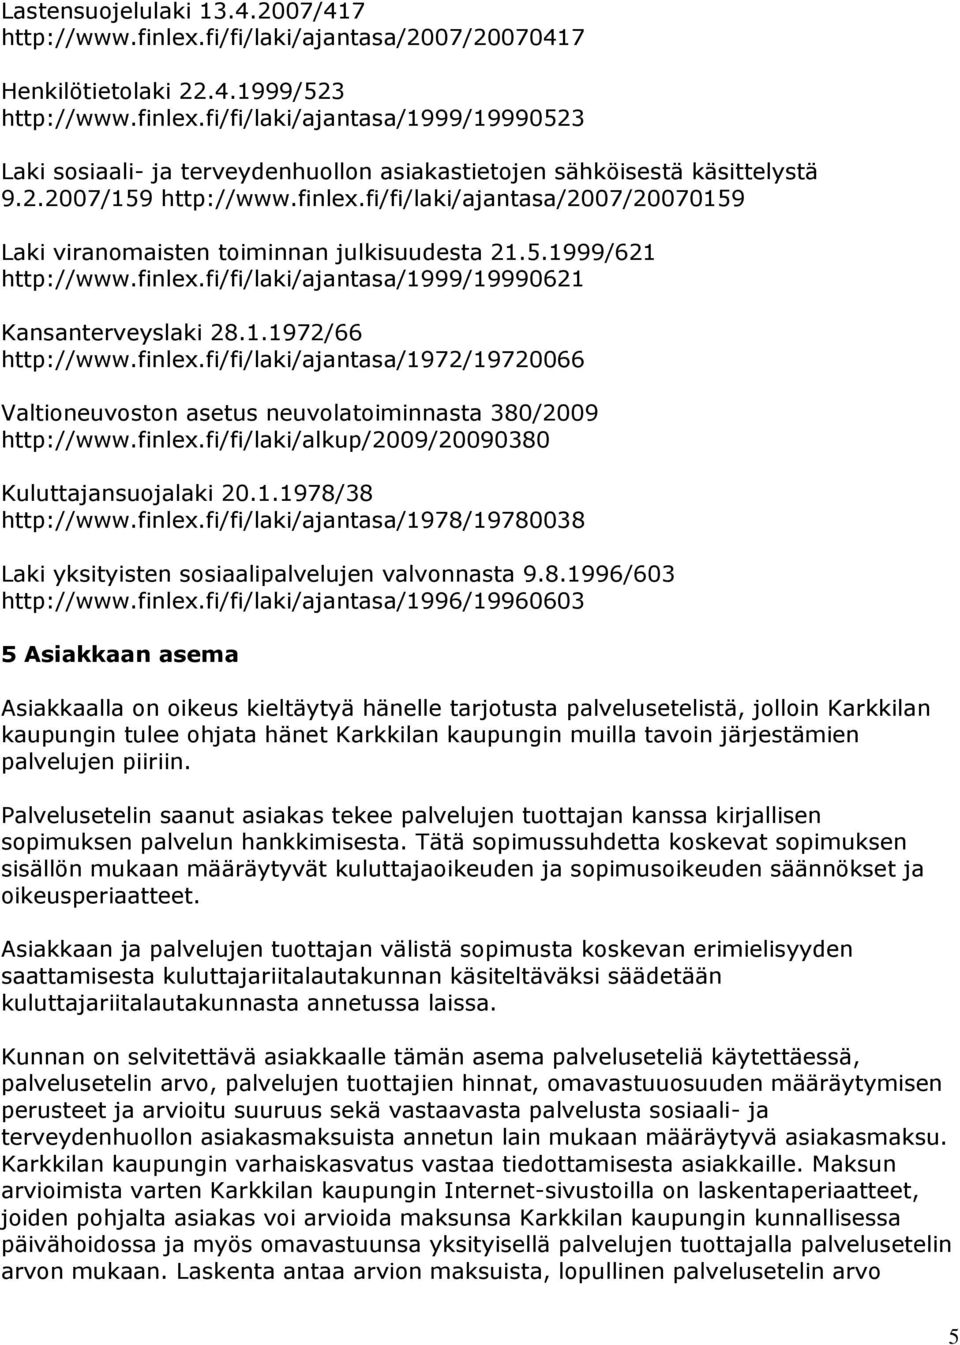 finlex.fi/fi/laki/ajantasa/1972/19720066 Valtioneuvoston asetus neuvolatoiminnasta 380/2009 http://www.finlex.fi/fi/laki/alkup/2009/20090380 Kuluttajansuojalaki 20.1.1978/38 http://www.finlex.fi/fi/laki/ajantasa/1978/19780038 Laki yksityisten sosiaalipalvelujen valvonnasta 9.